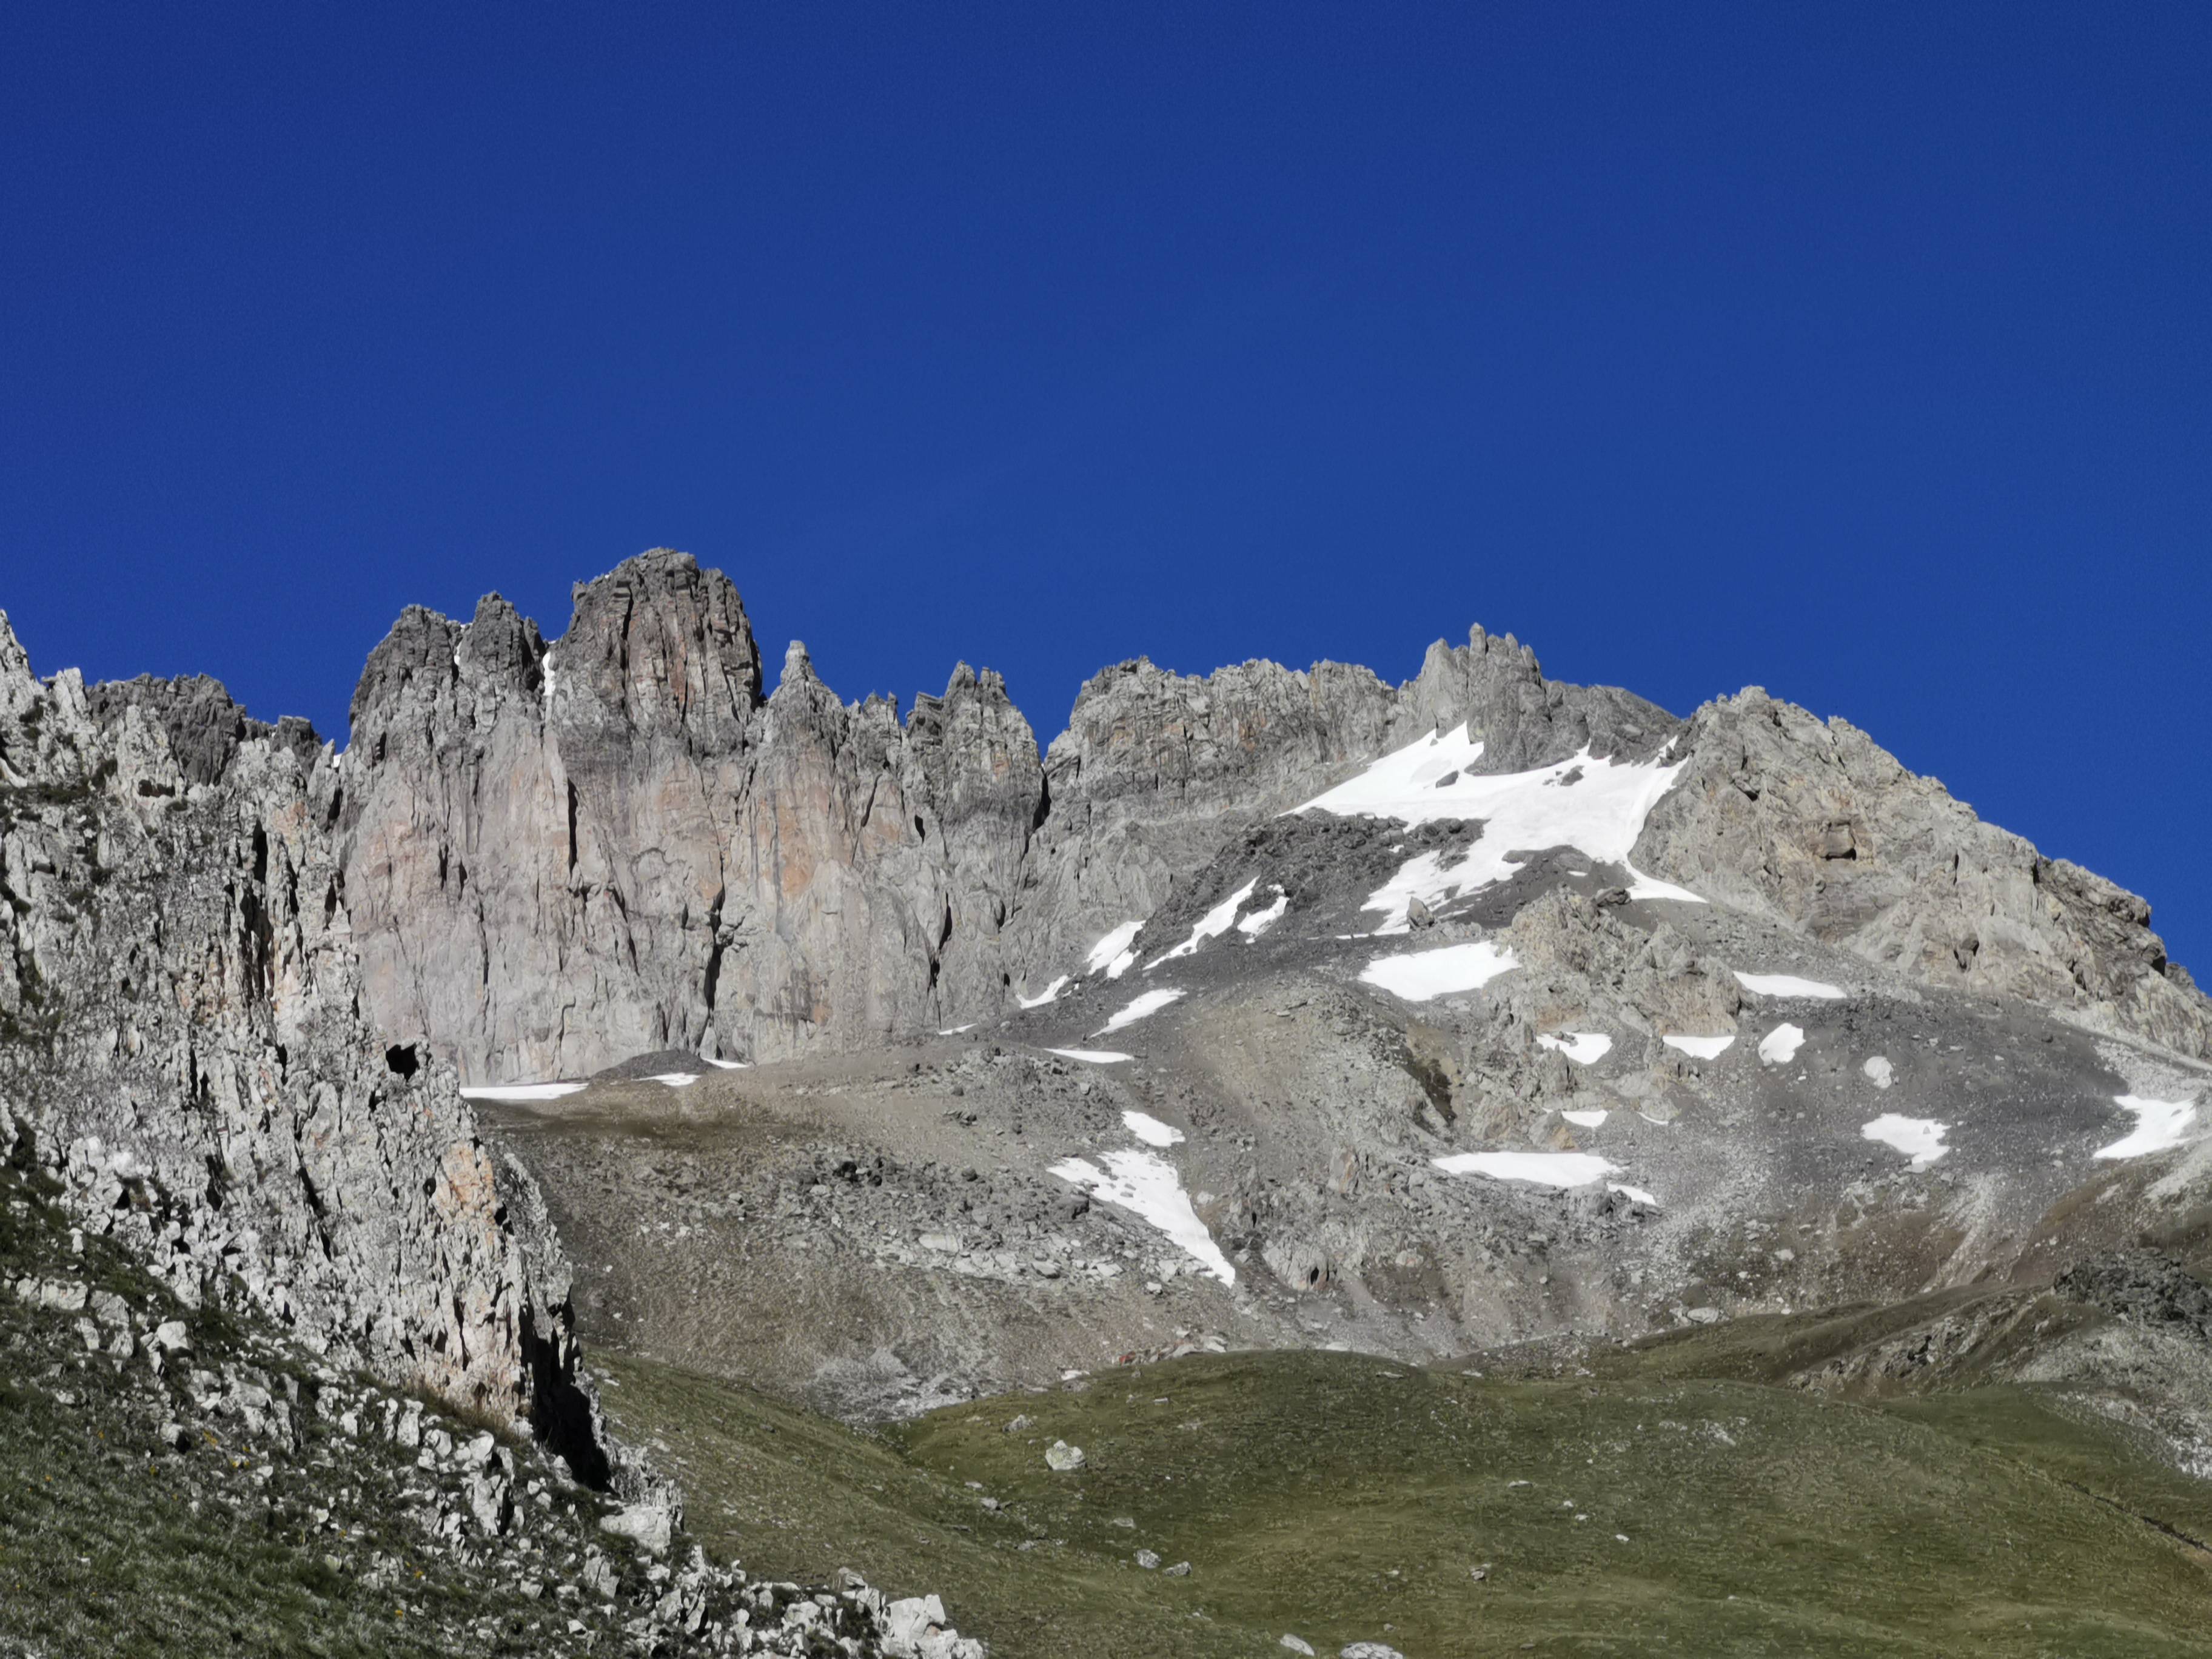 Picture from Area related to Pic de l'Aigle, Glacier de la Clapière, La Jargette shoot by Arnaud Berrieau